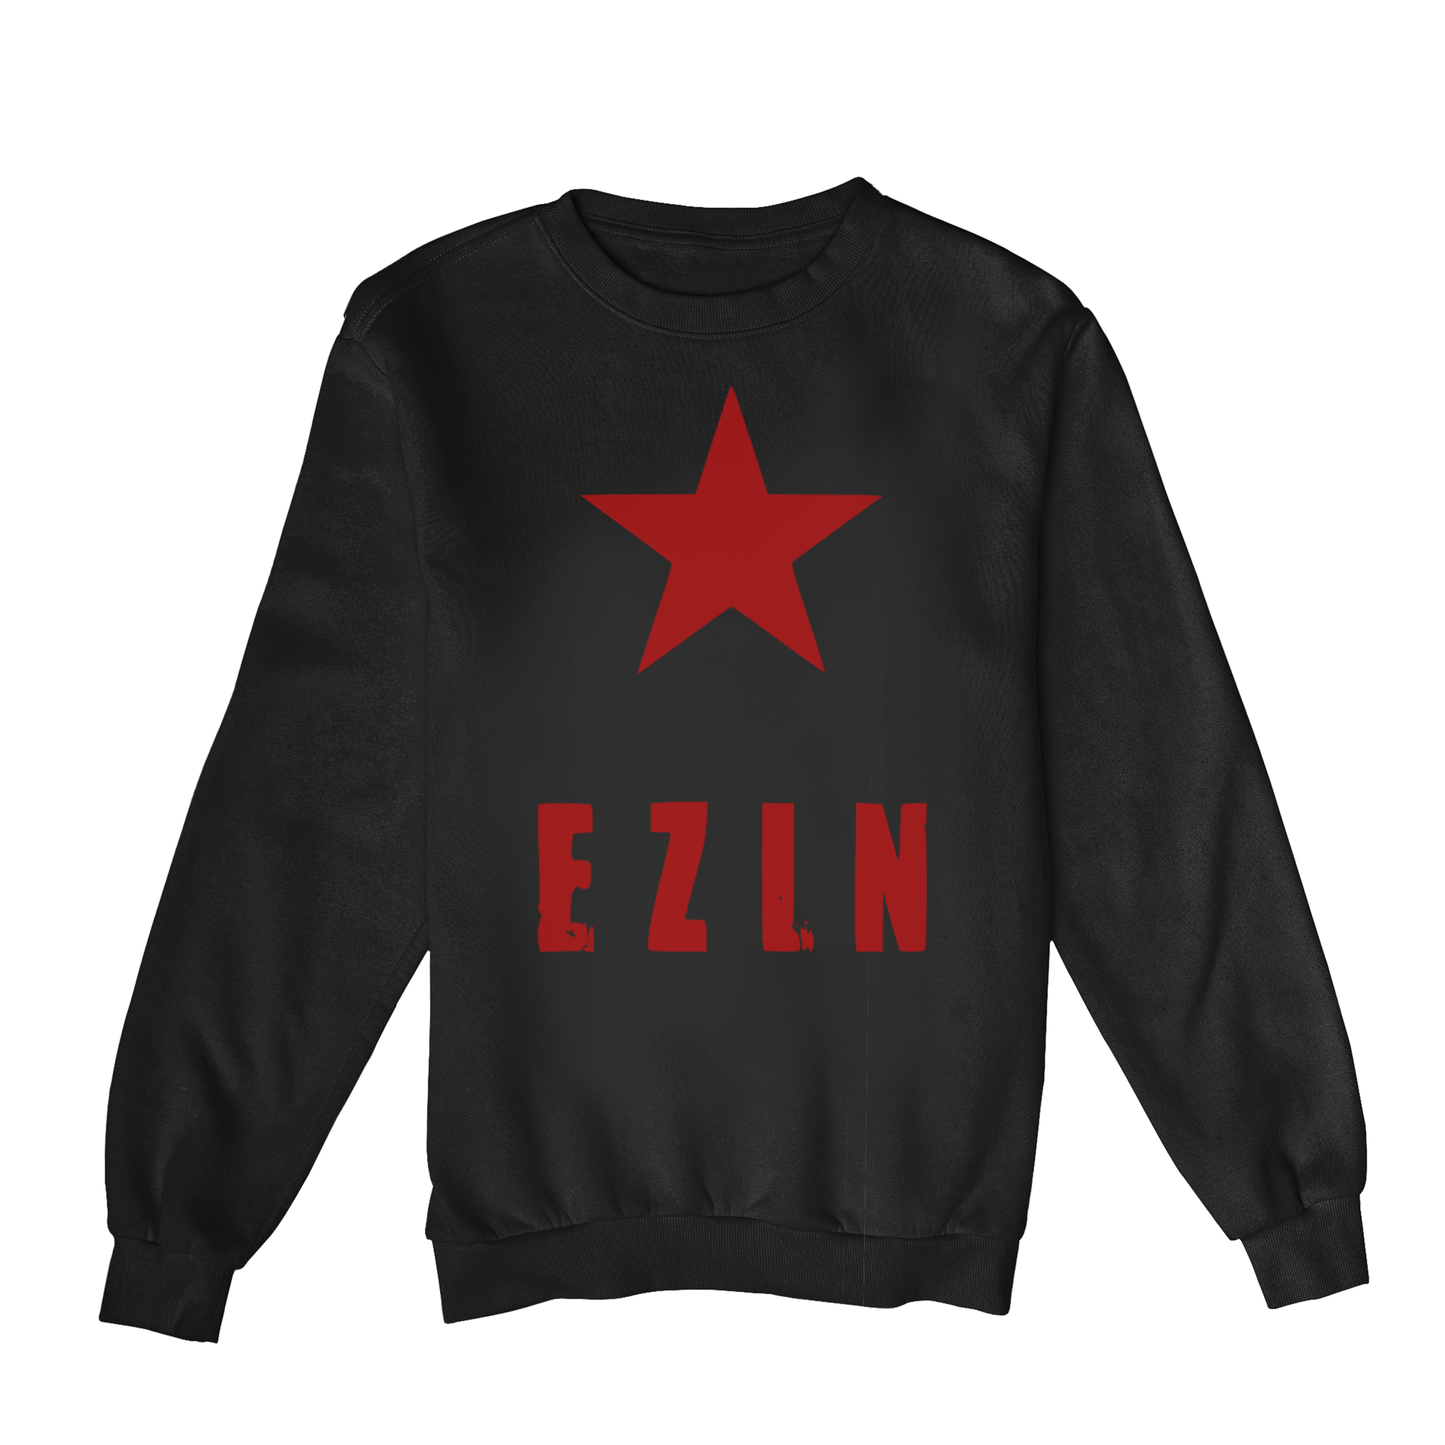 Moletom Estampa: Texto escrito EZLN(Exército Zapatista de Libertação Nacional) com uma estrela acima.